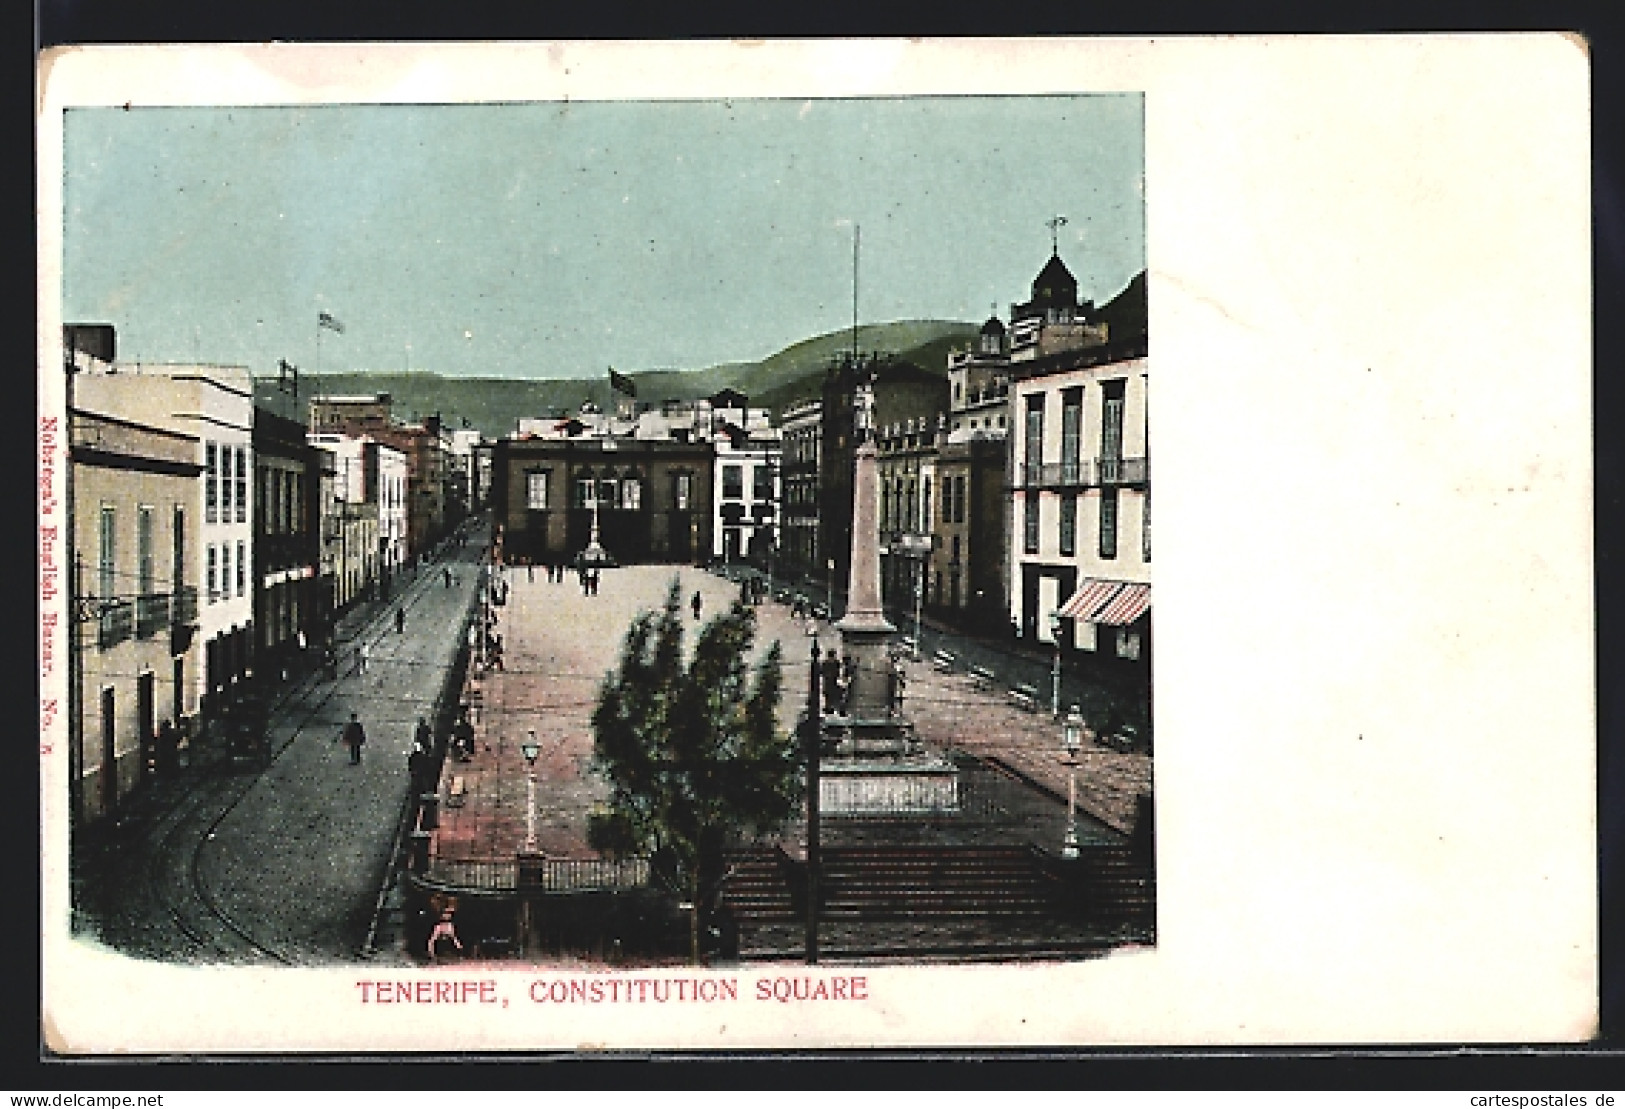 Postal Tenerife, Constitution Square  - Tenerife